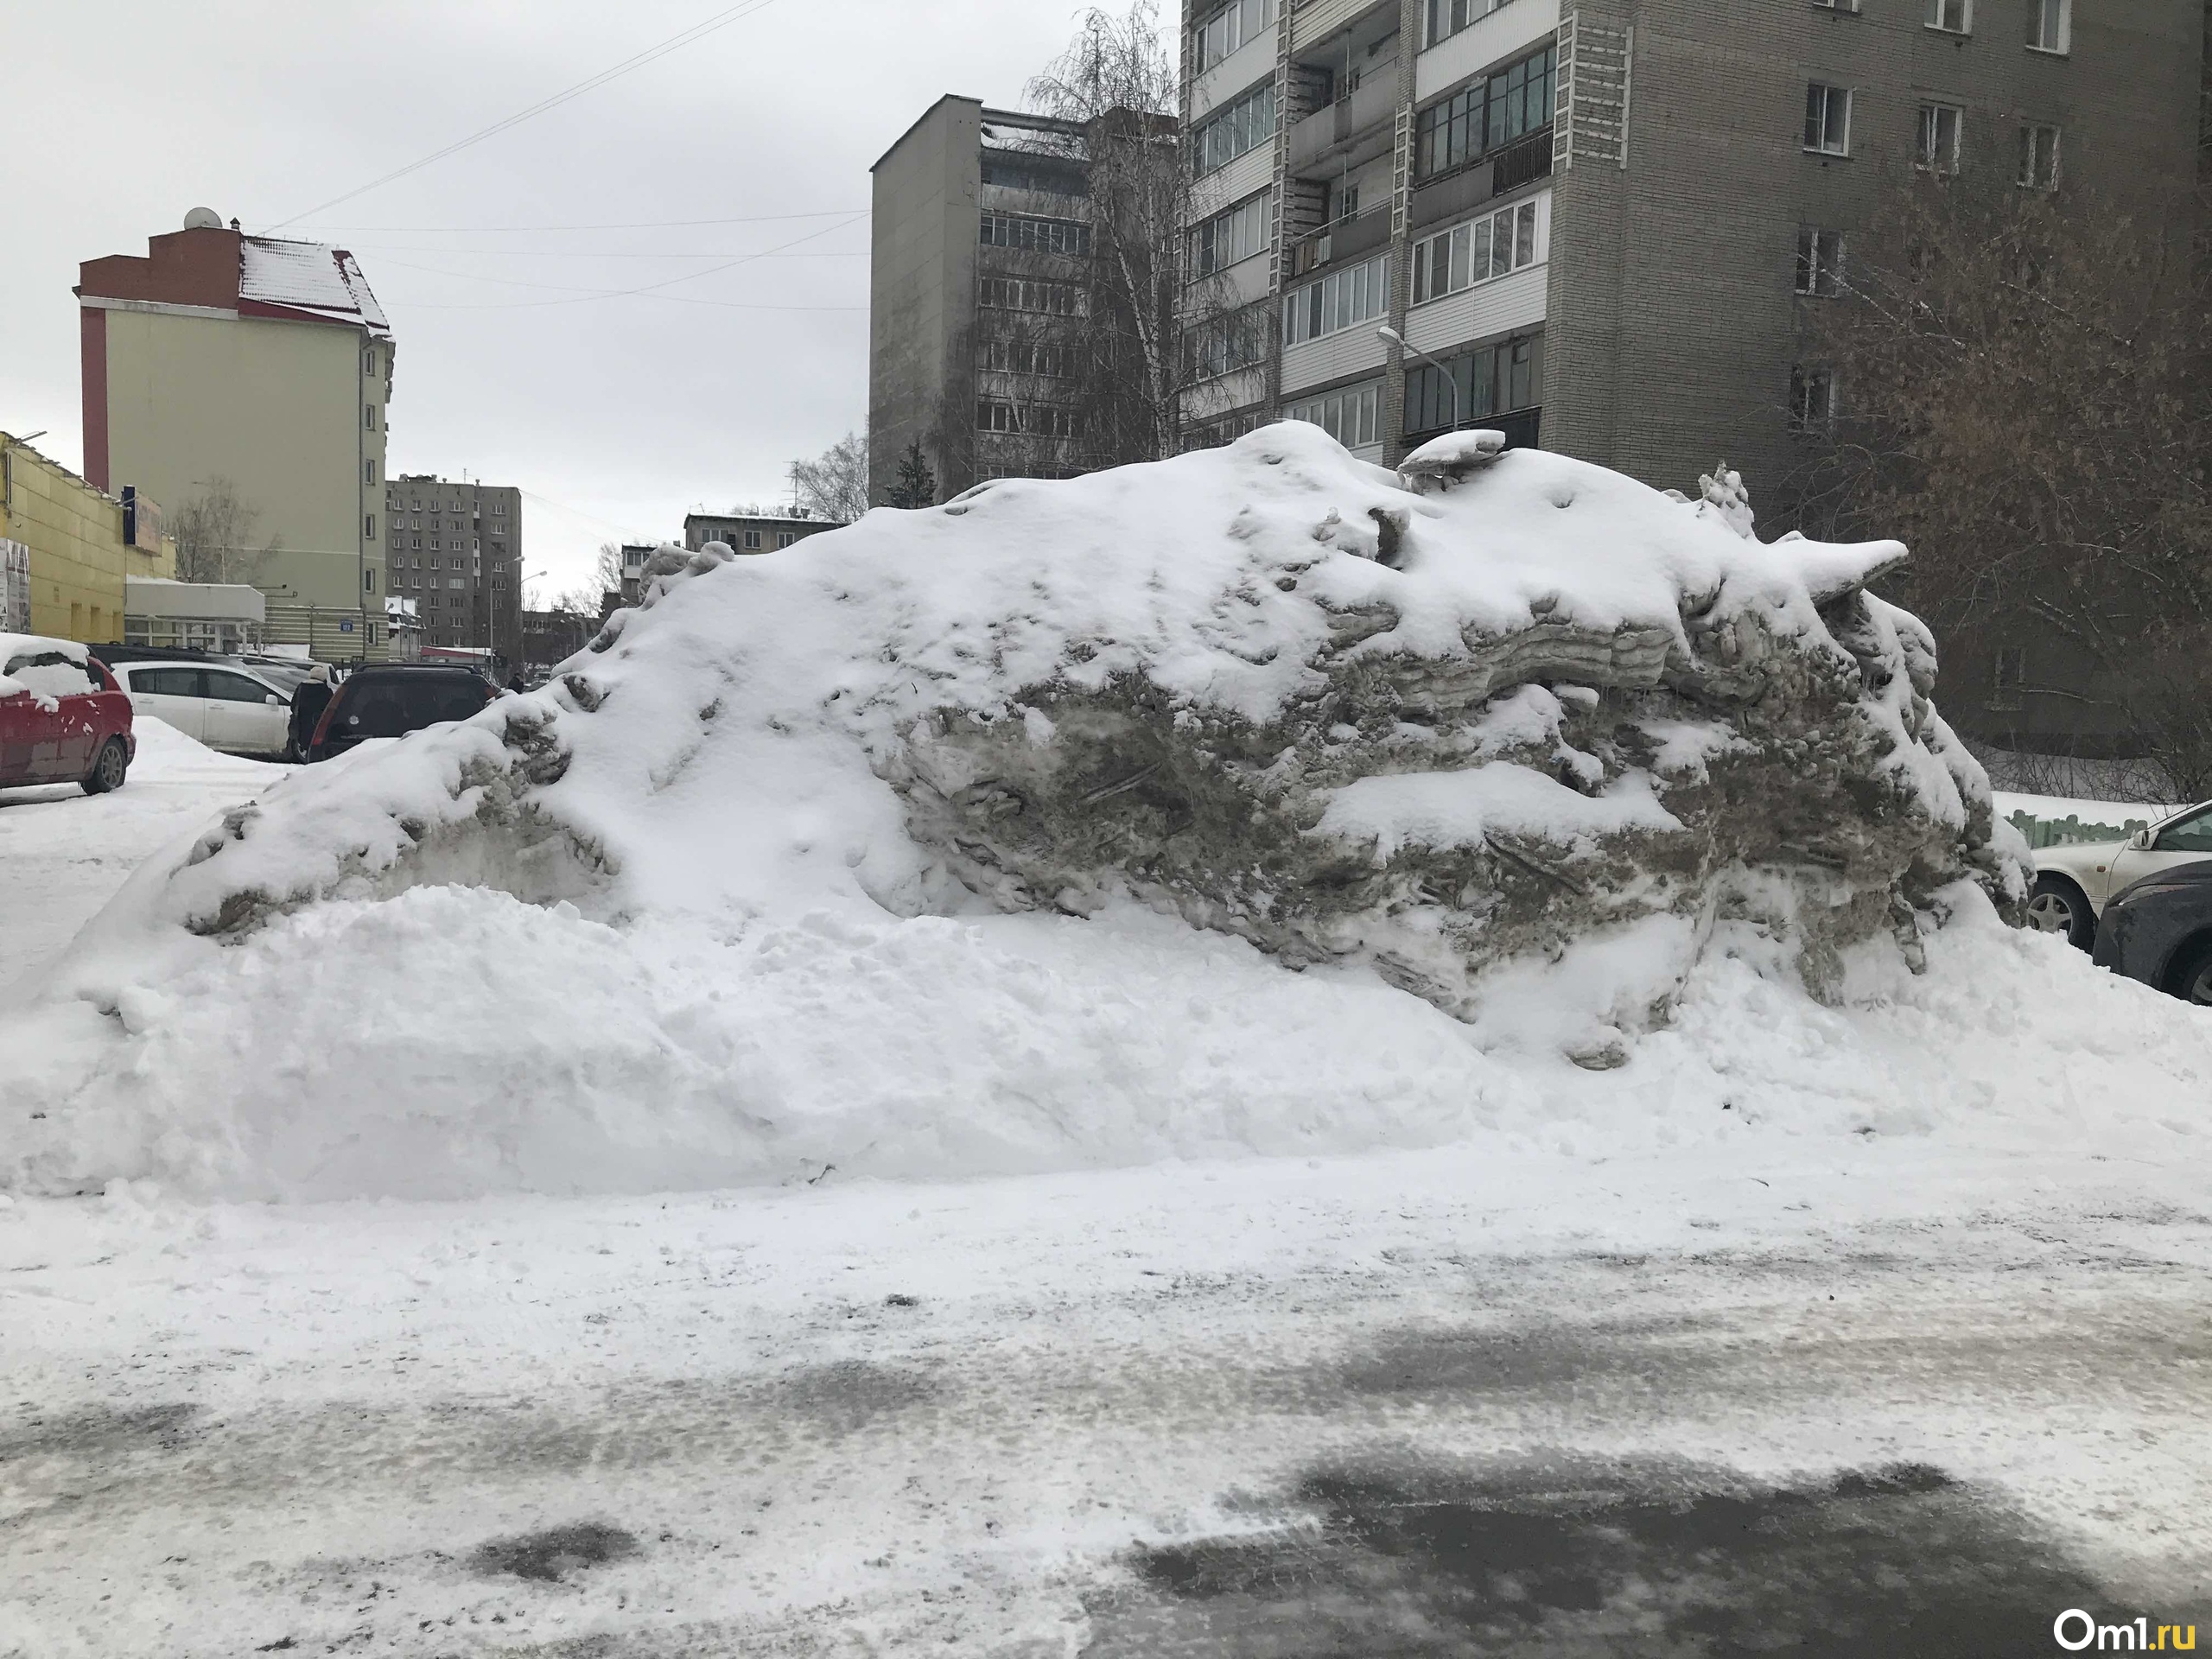 Появятся сугробы. Сугробы в Новосибирске. Рекордные снегопады в Новосибирске. Сугробы в ночном Новосибирске. Обильныйый снег сугробы заносы.